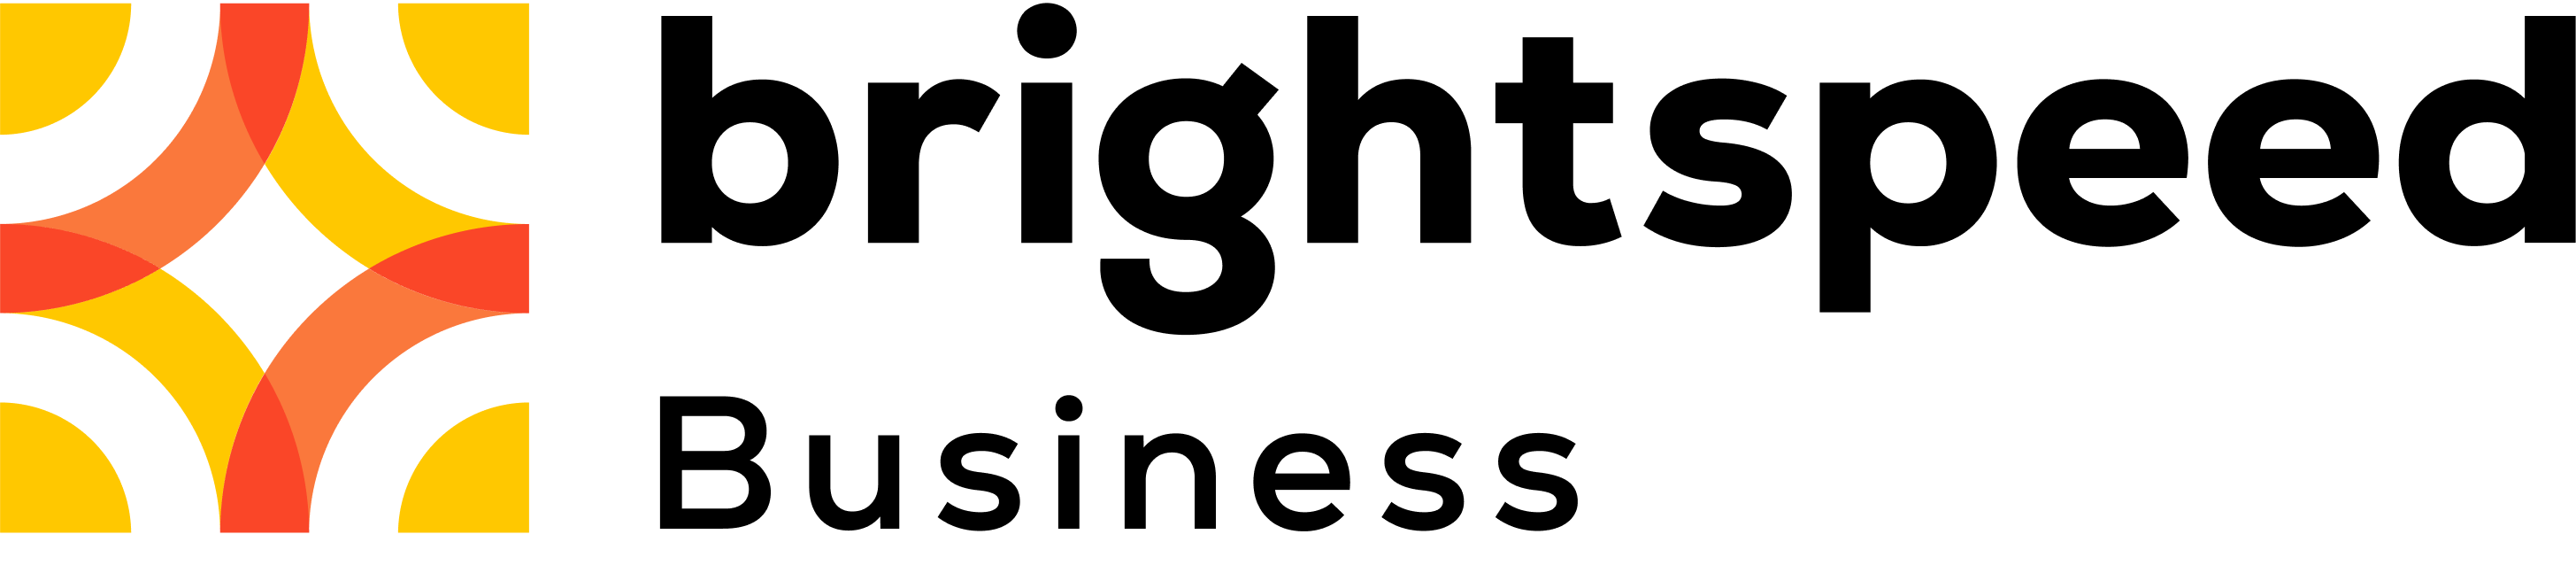 Brightspeed footer logo